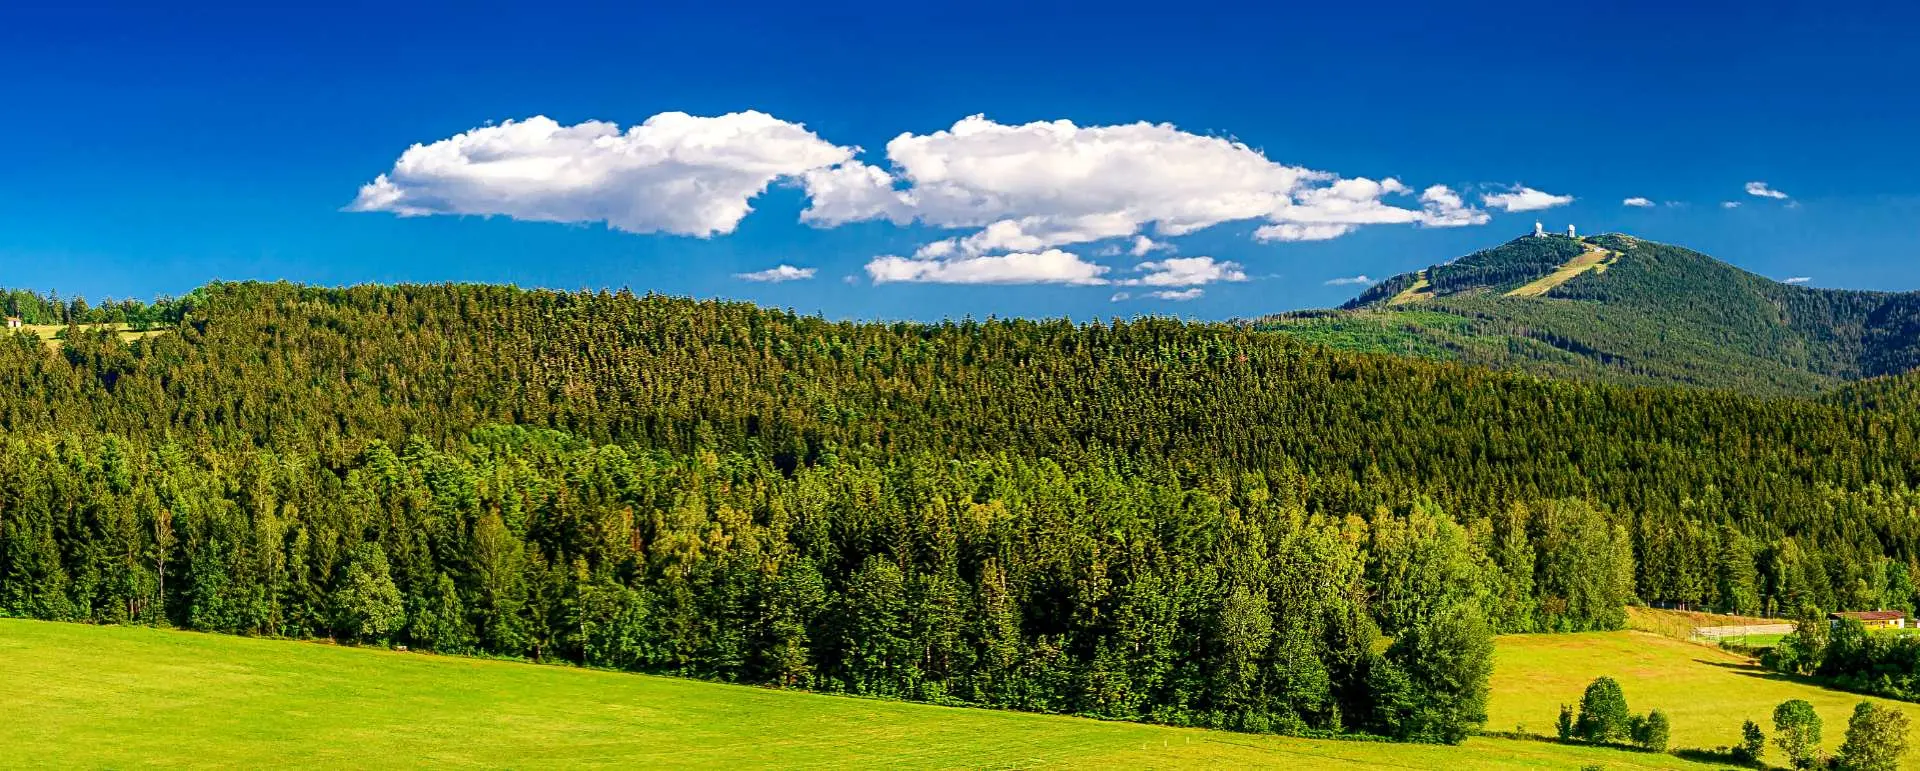 Foresta bavarese - la destinazione per i gruppi